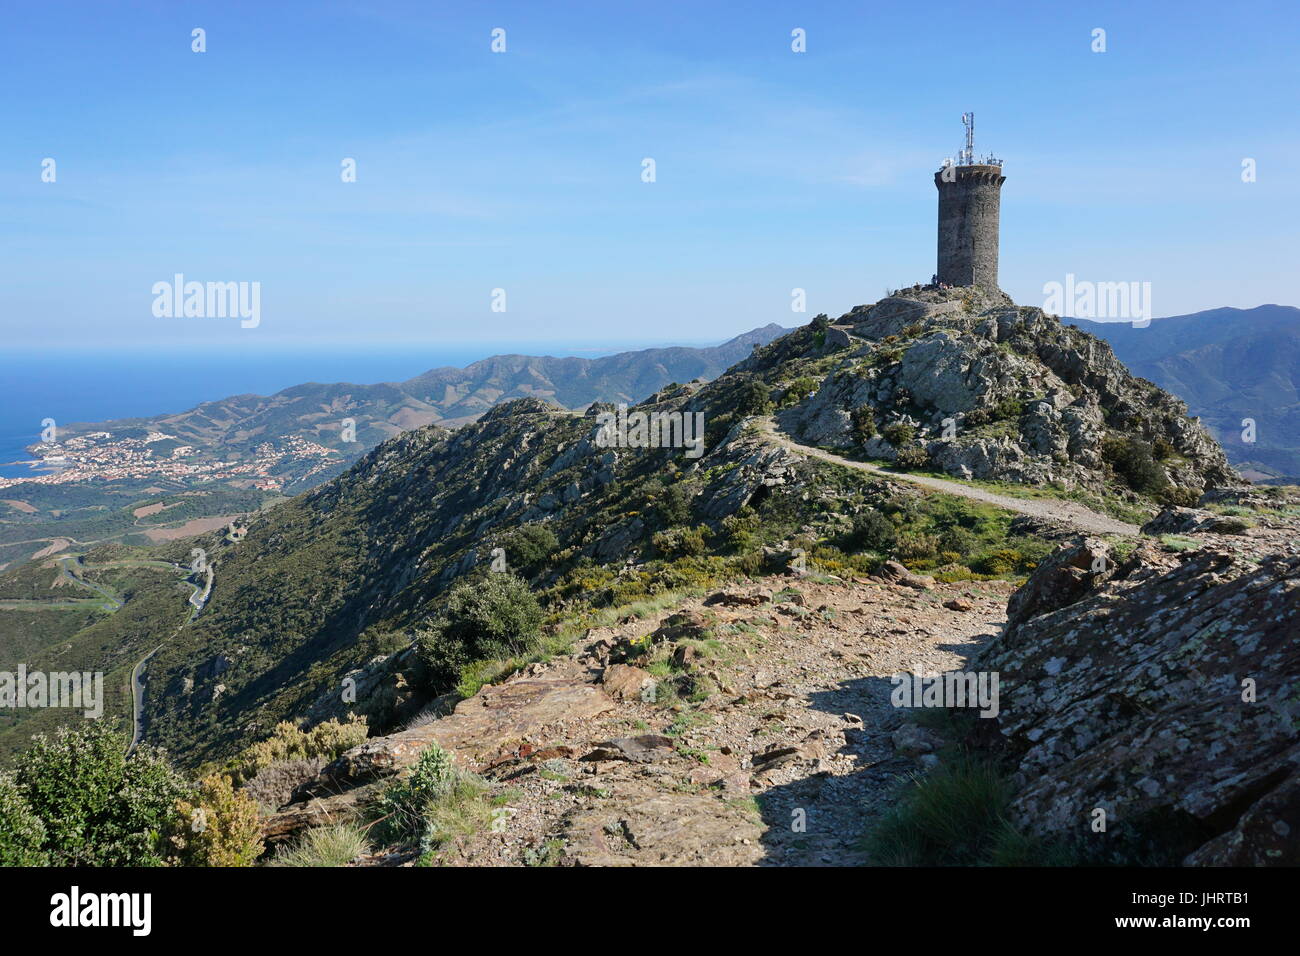 La tour de guet médiévale Madeloc, vieille tour en pierre donnant sur la côte Vermeille, méditerranée, Pyrénées Orientales, Roussillon, sud de la France Banque D'Images